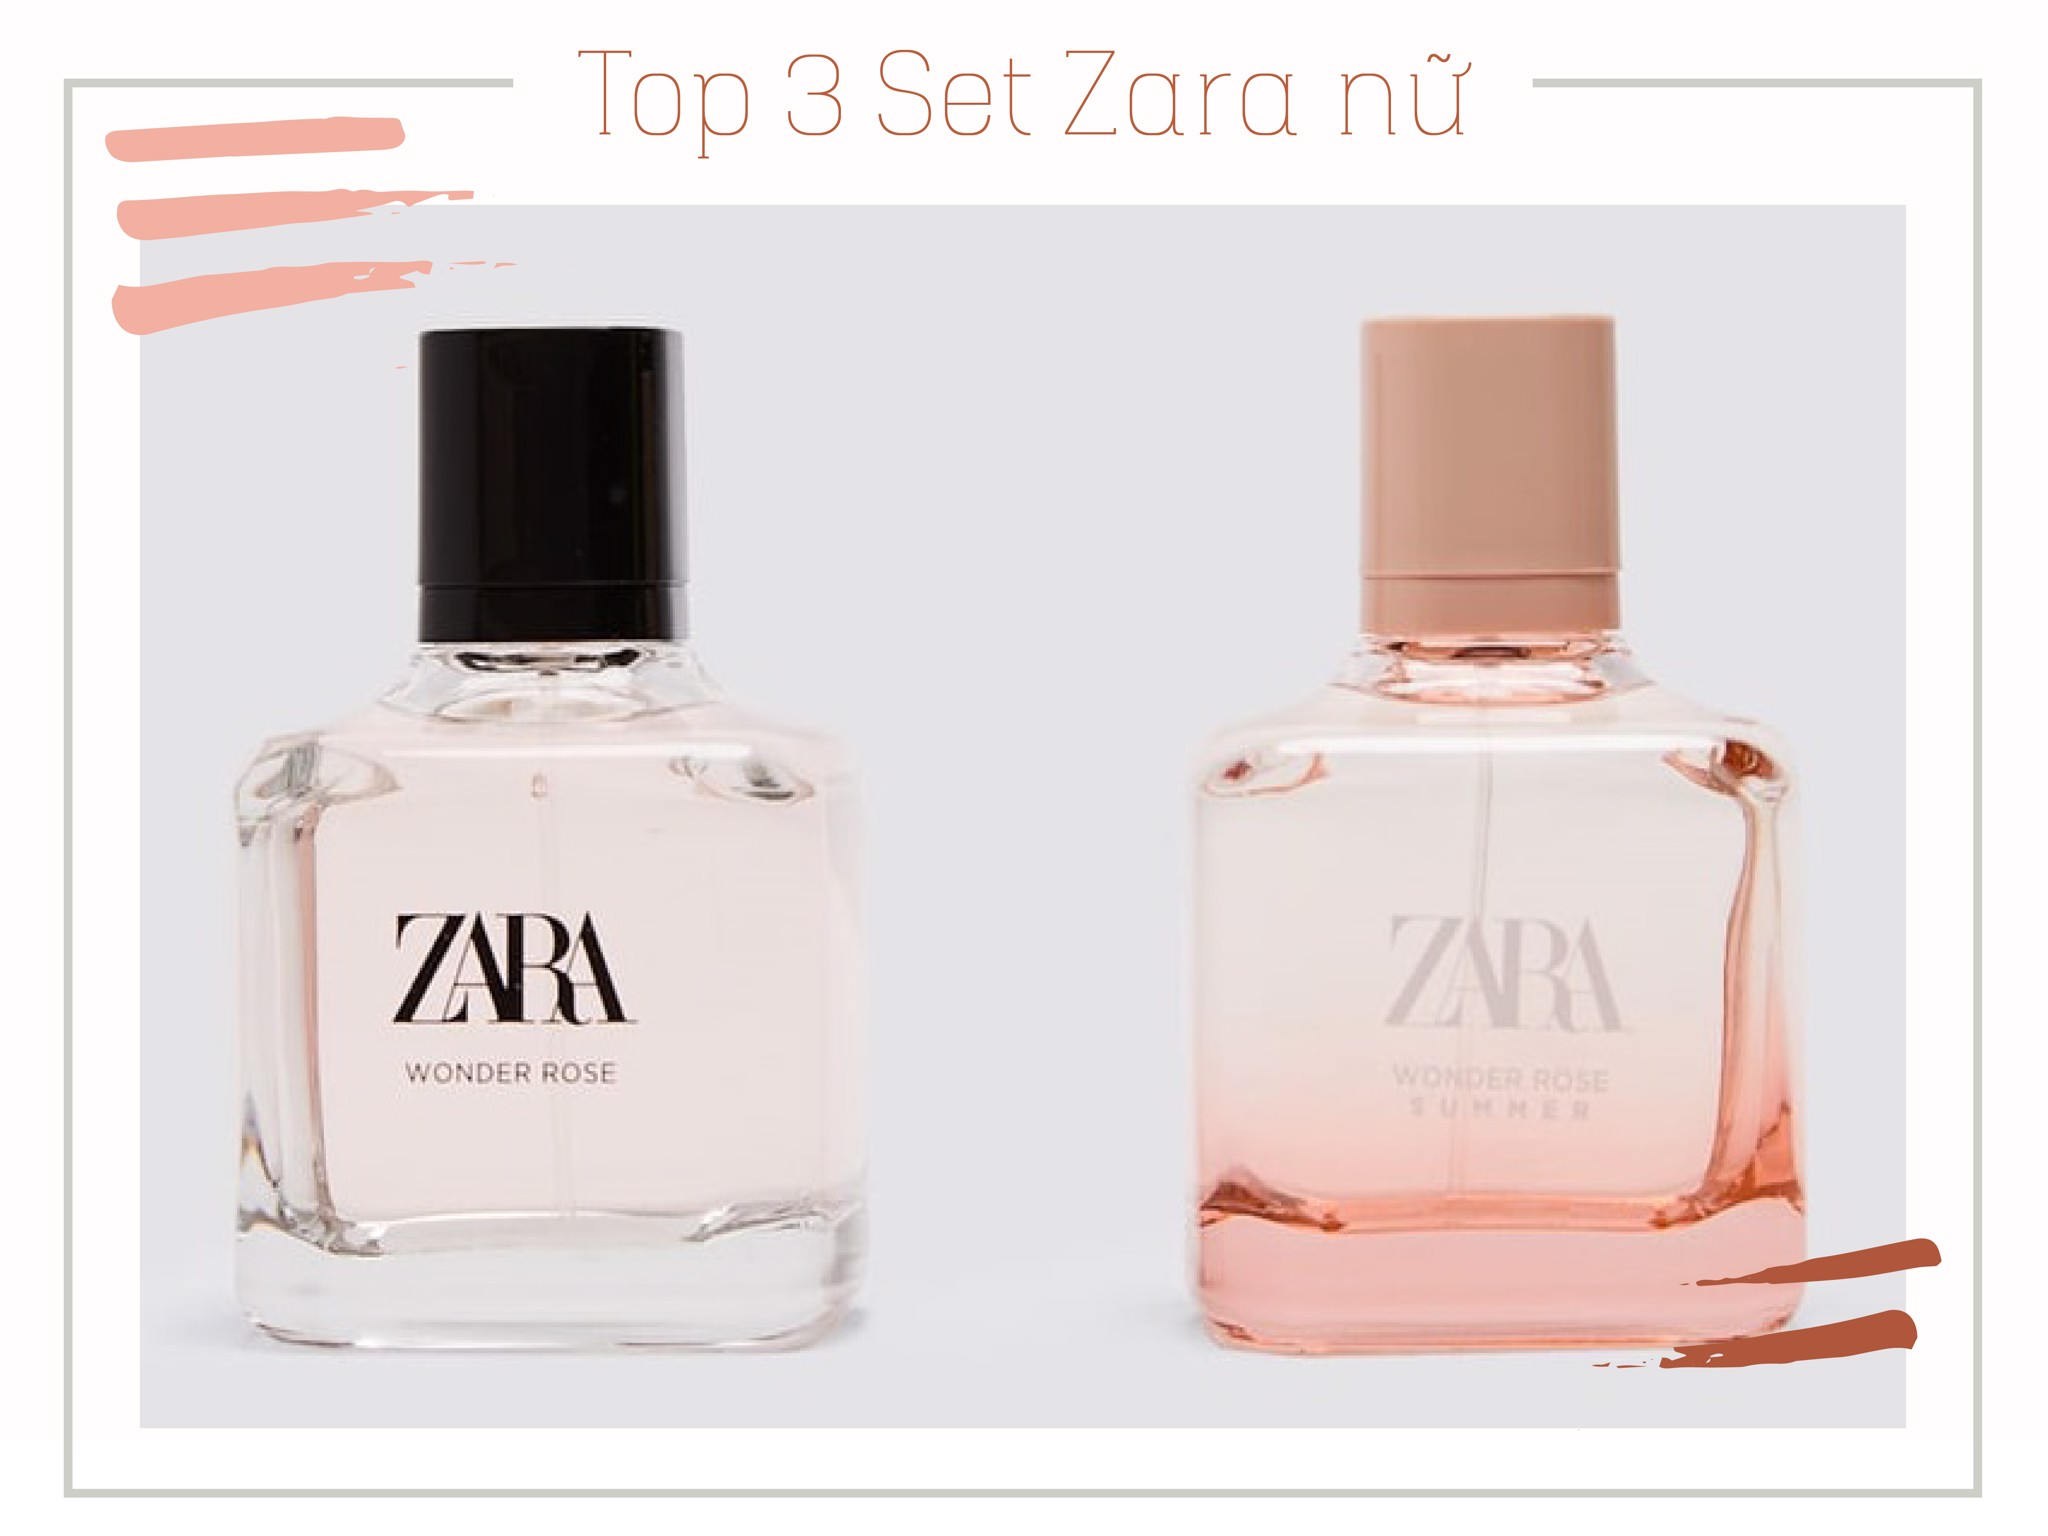 Top 3 set nước hoa Zara nữ bán chạy nhất xuân hè